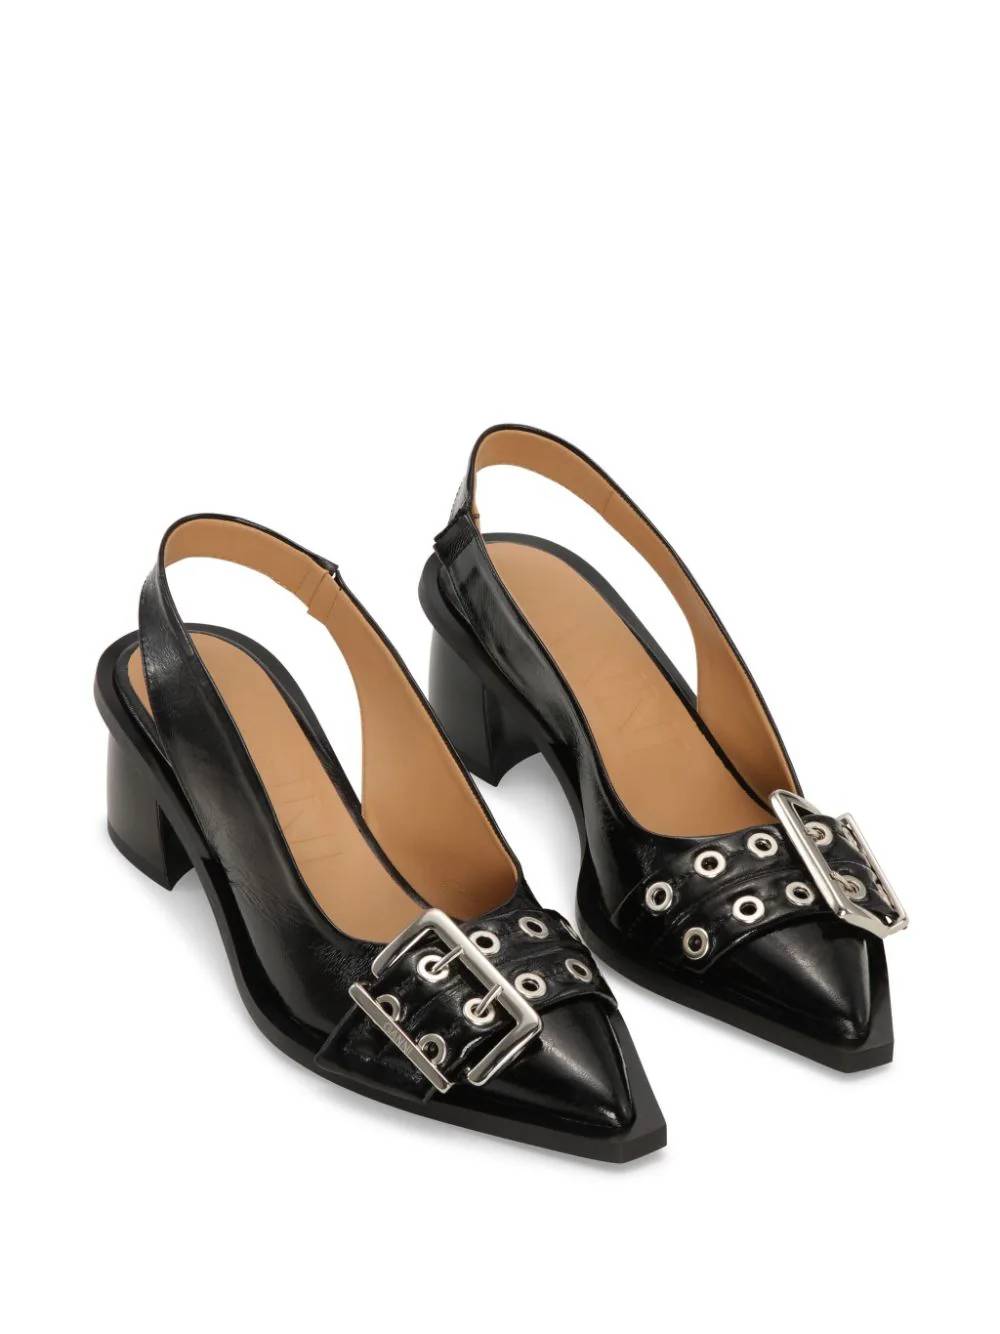 GANNI S2331 Woman Black Sandals - Zuklat